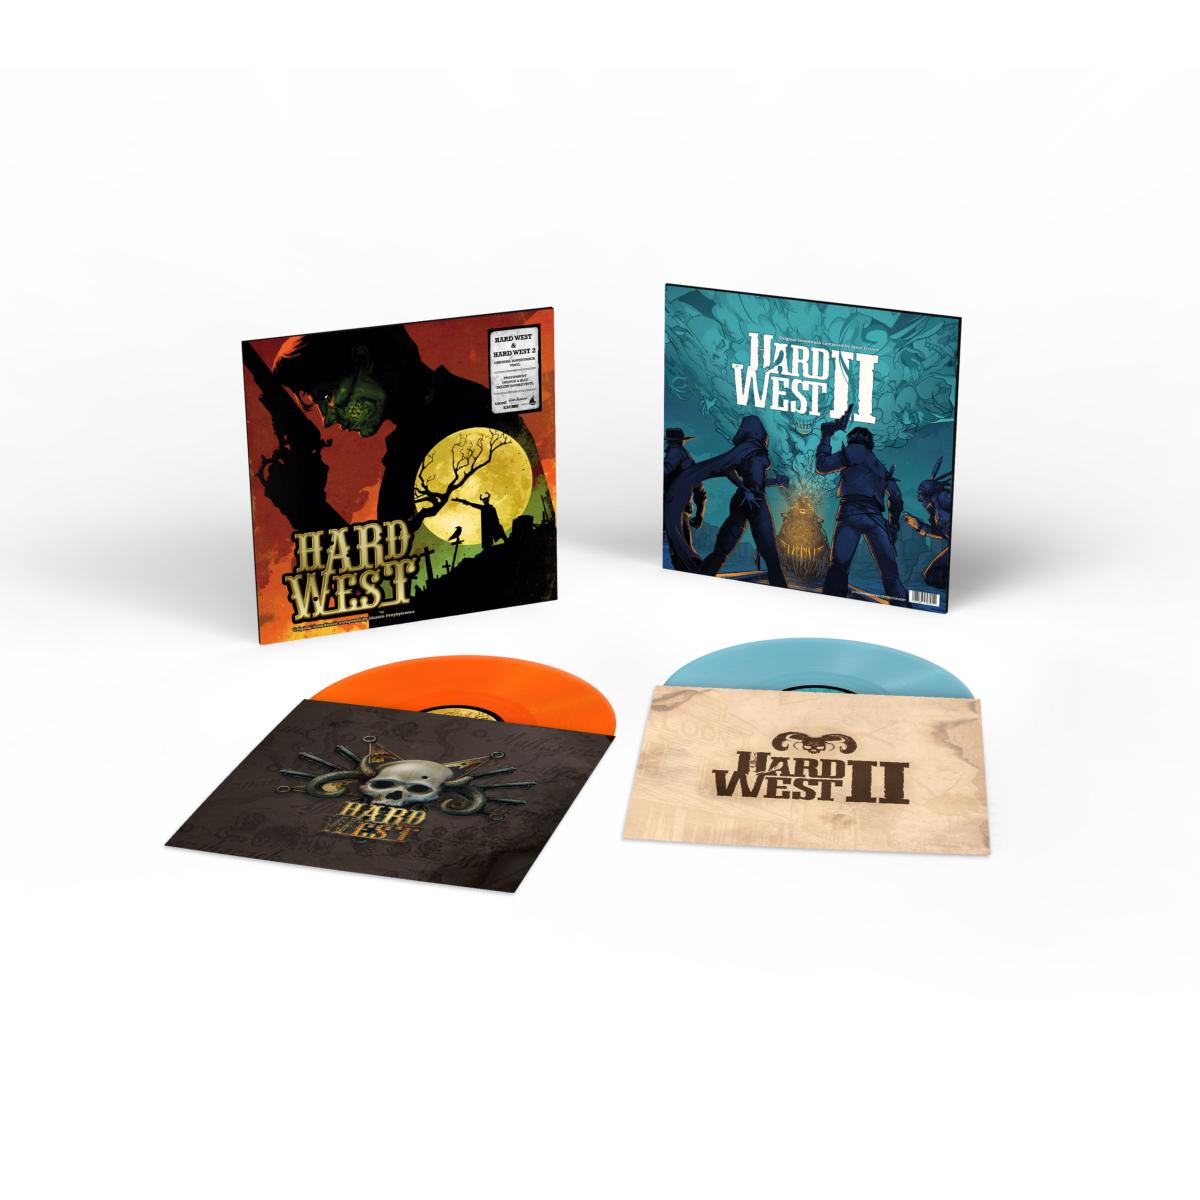 Hard West & Hard West 2 (Original Soundtrack) Vinyle - 2LP